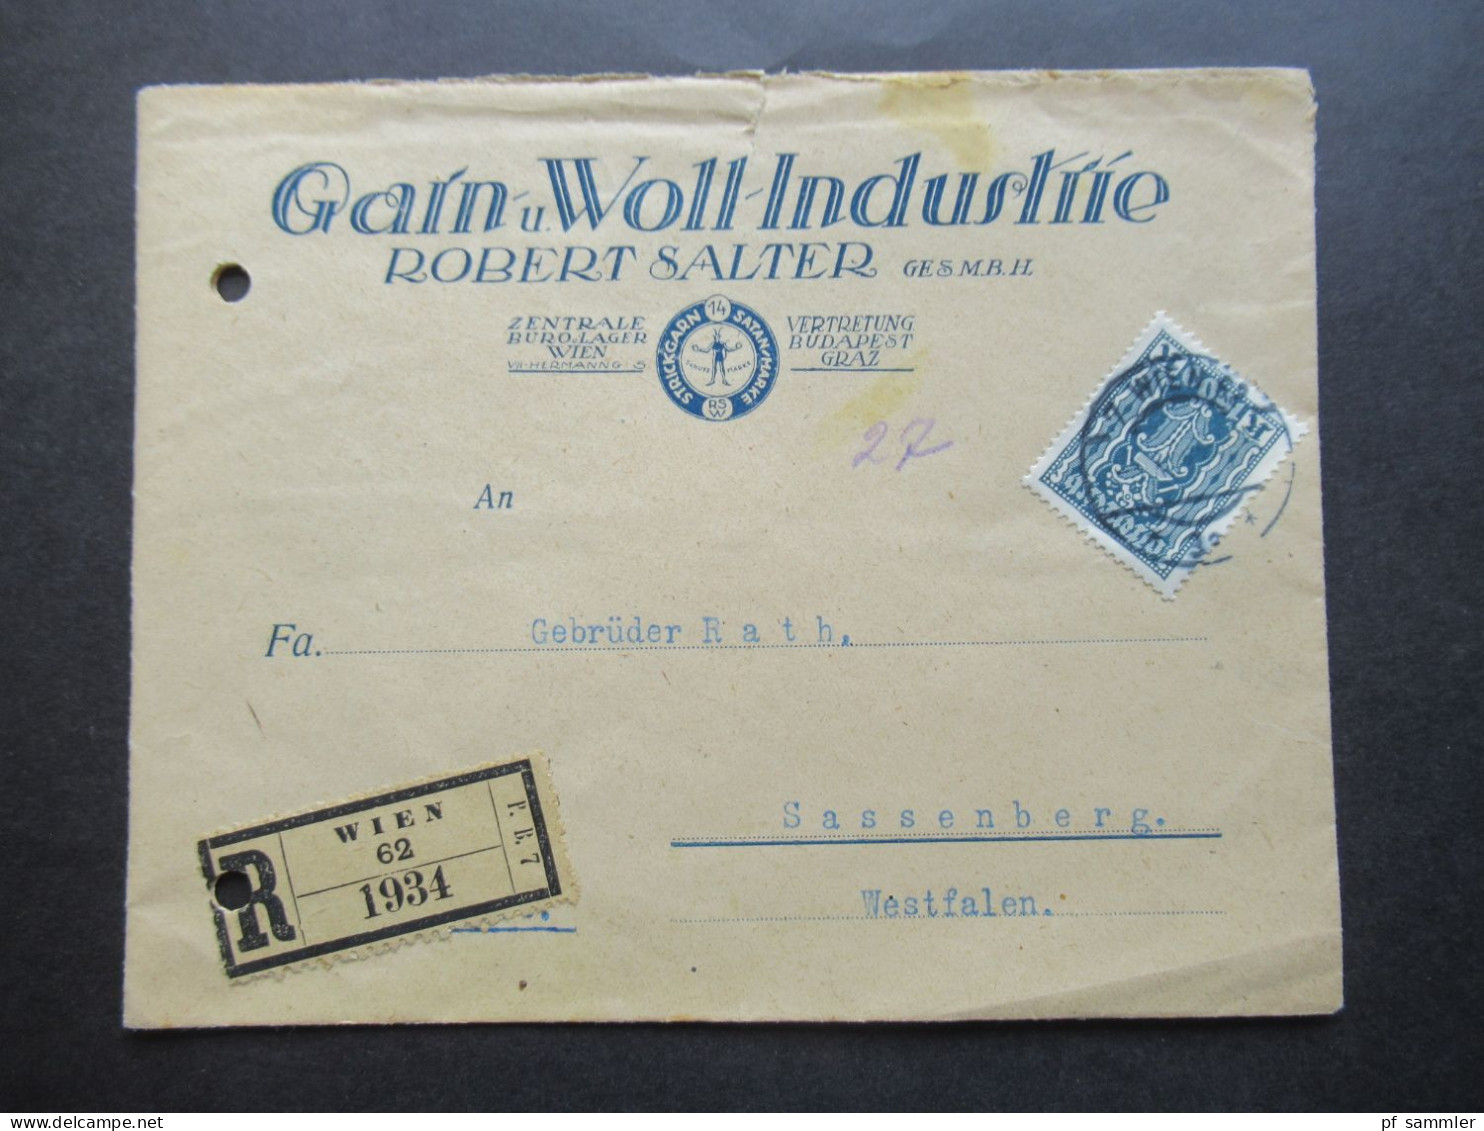 Österreich 1923 Hammer Und Zange Nr.391 EF Dekorativer Umschlag Garn U. Woll Industrie Robert Salter Einschreiben Wien - Covers & Documents